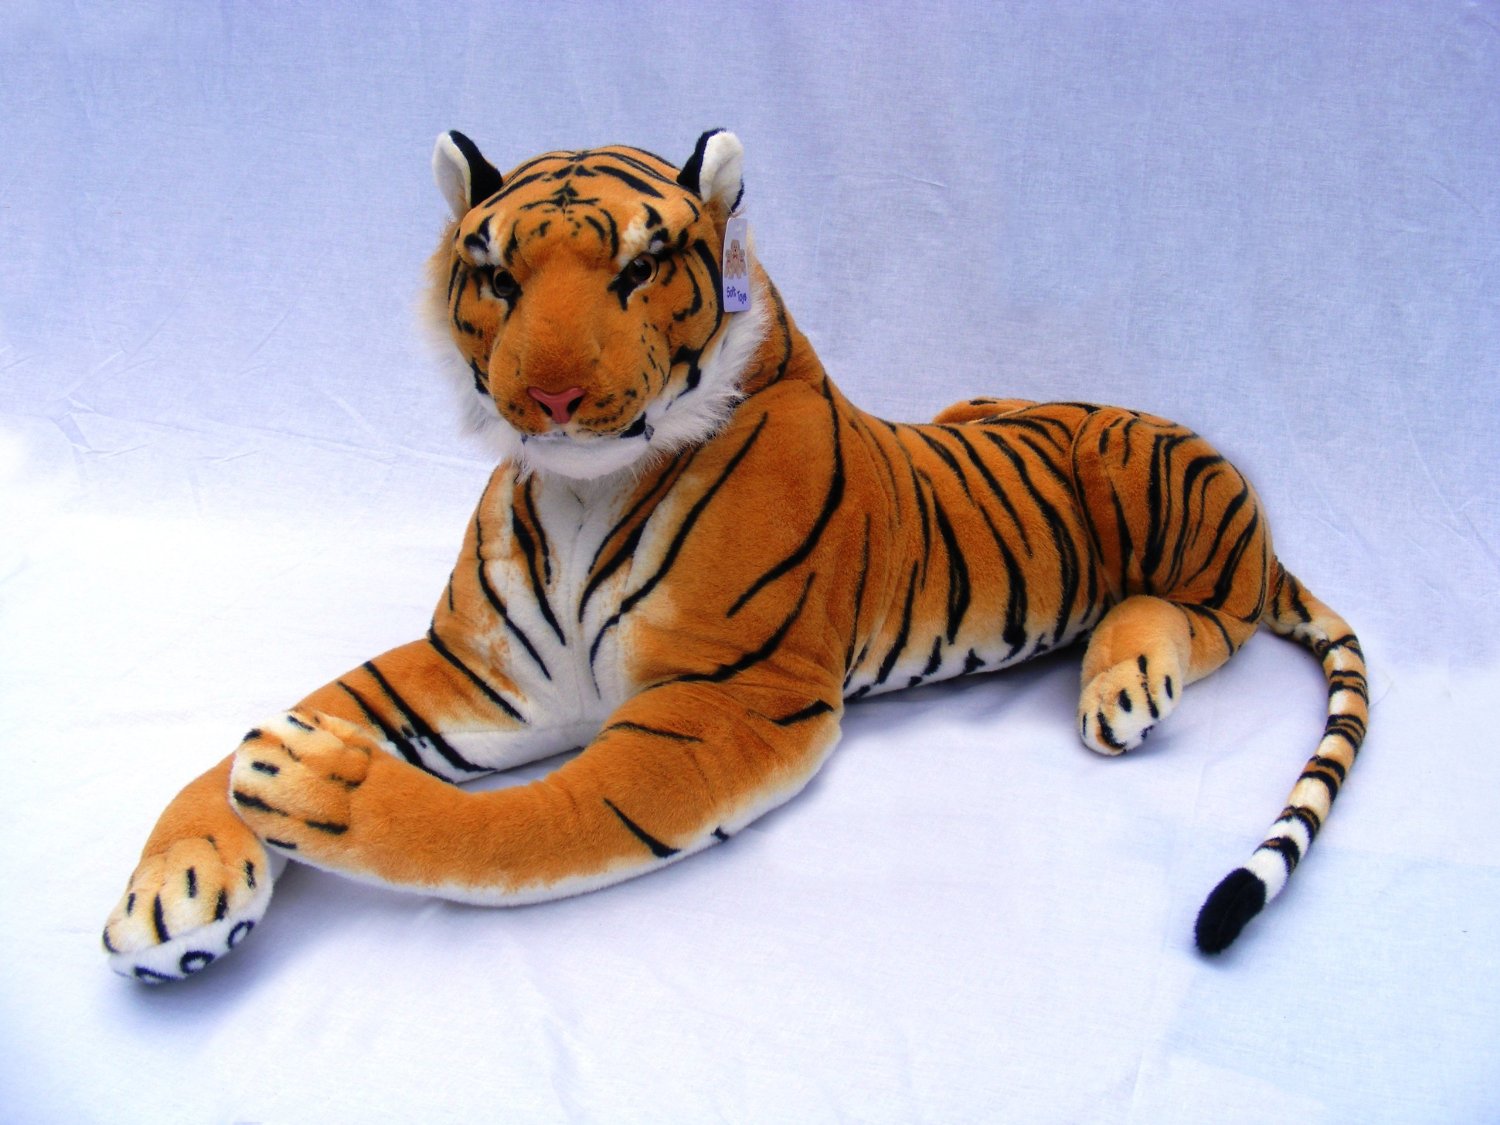 Giant Stuffed Tiger Animal Big Orange Tiger Plush Large 45